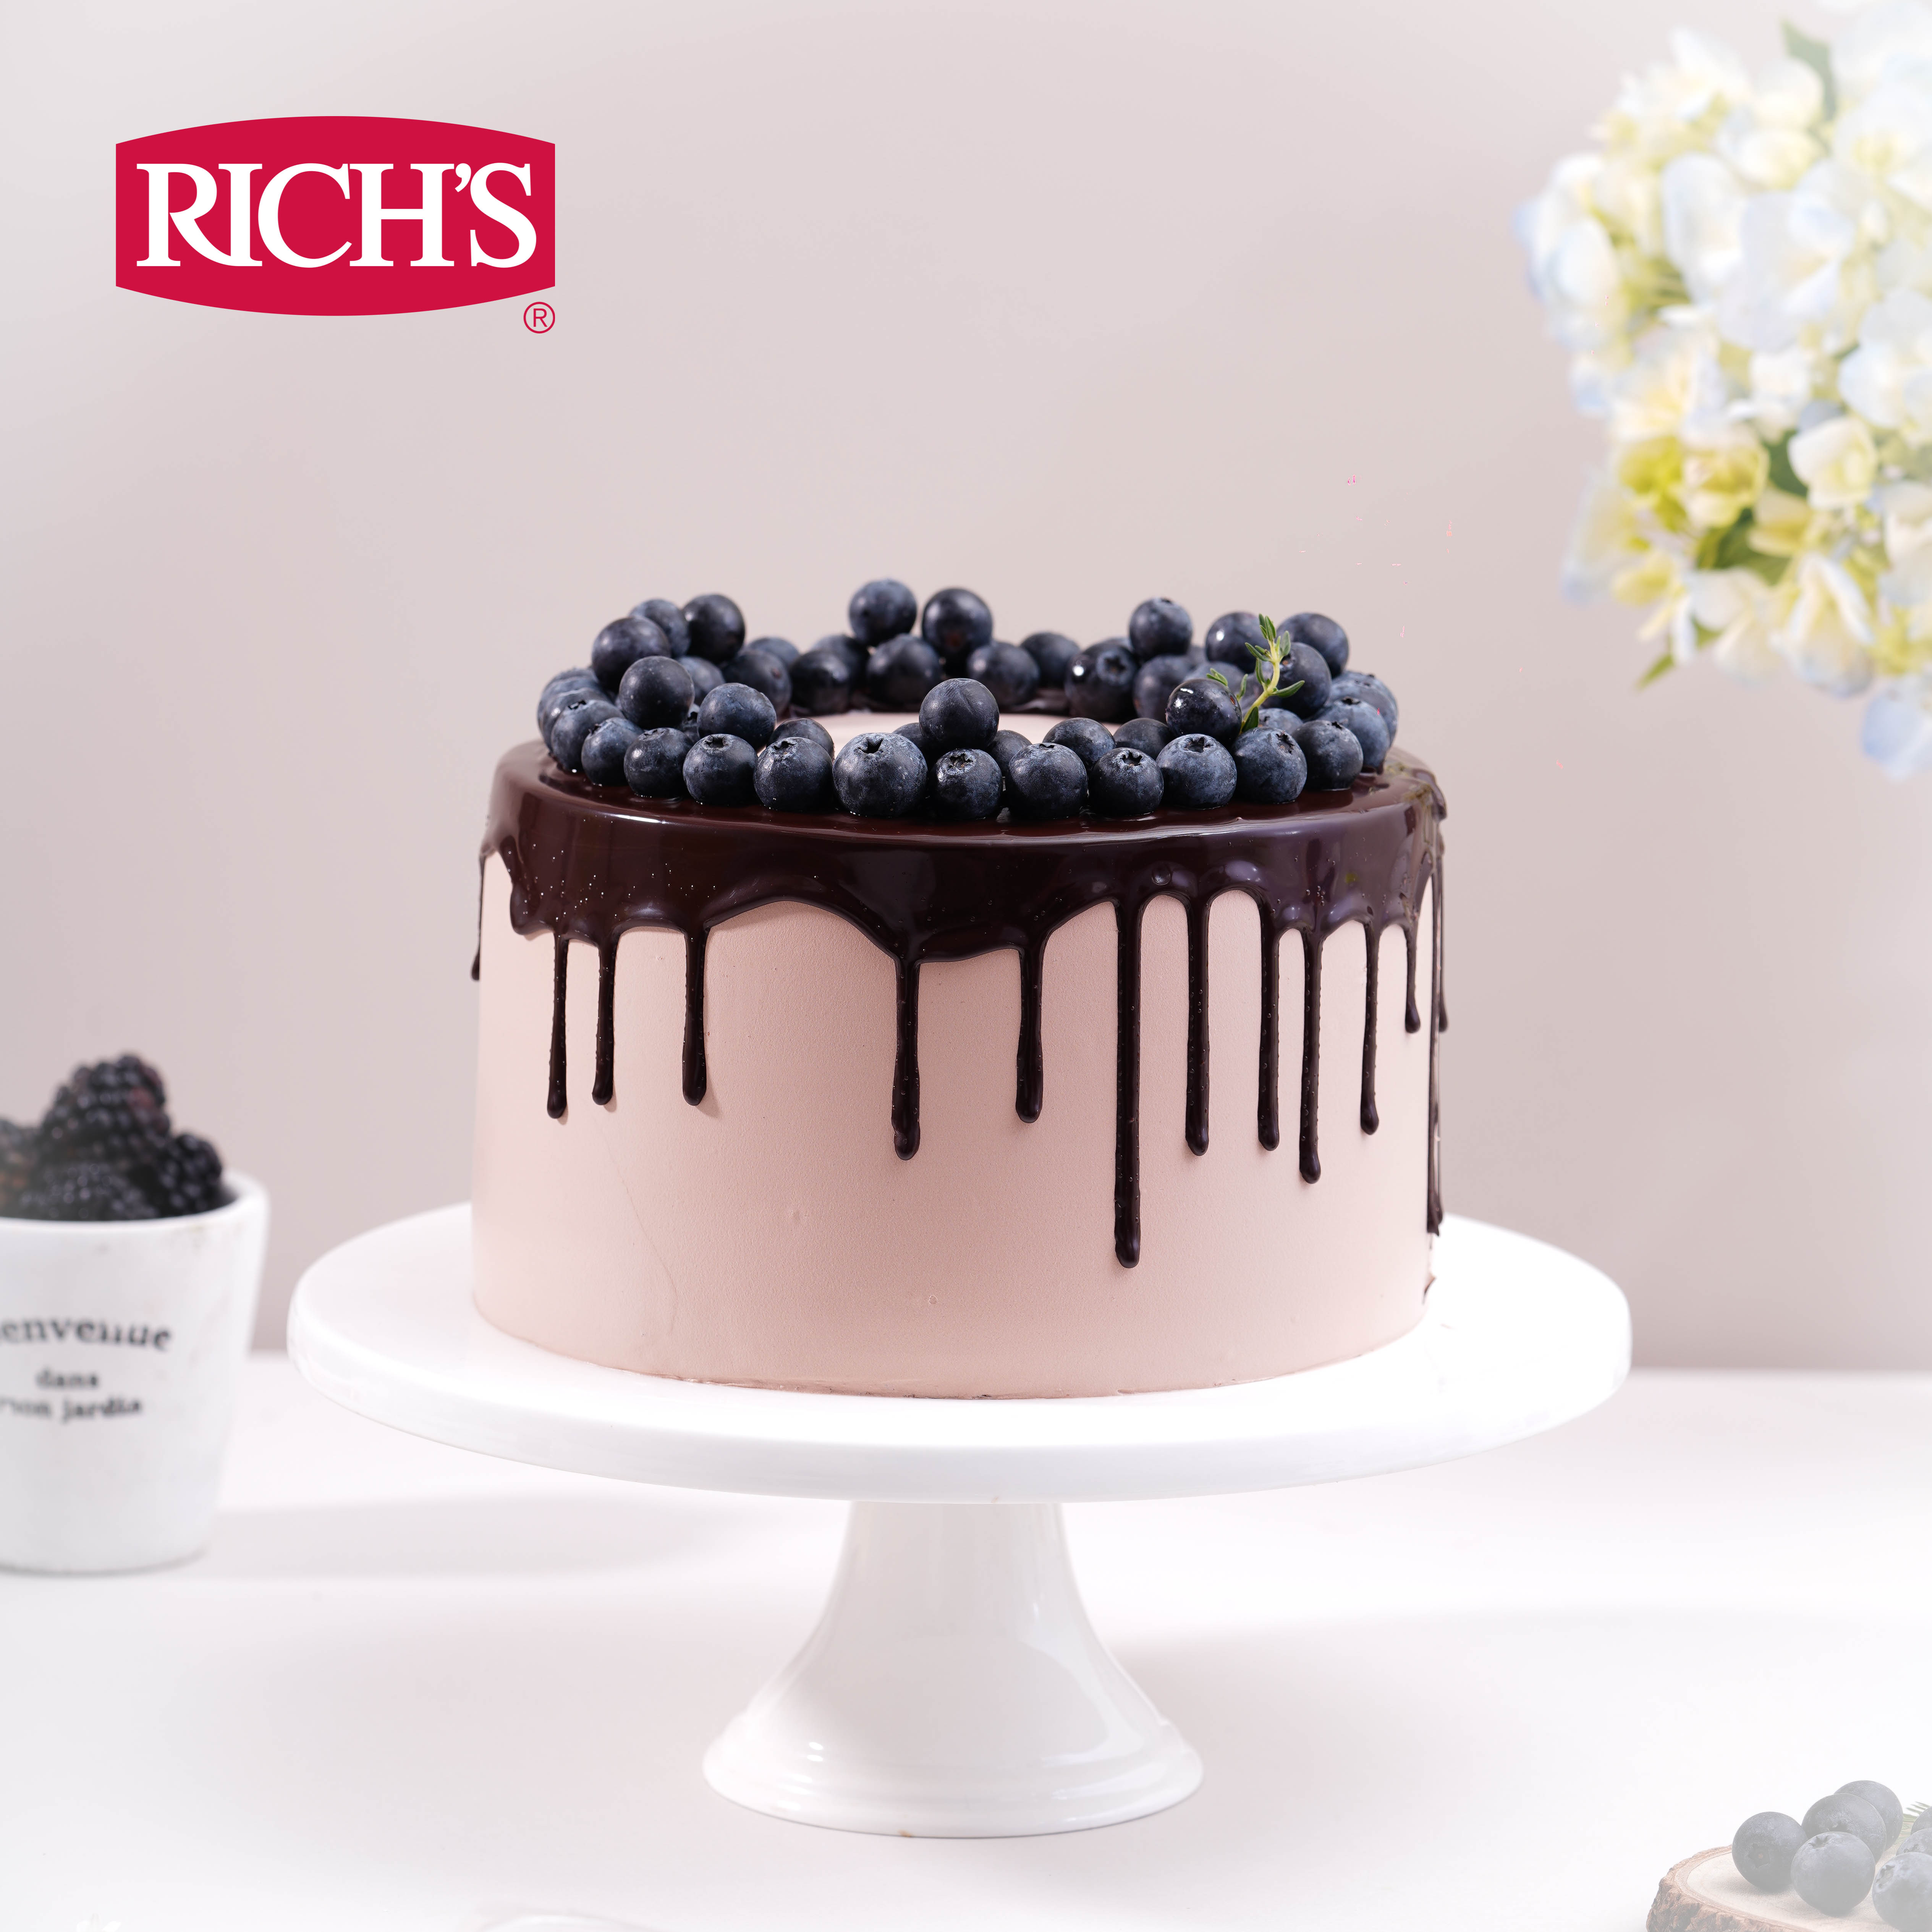 Hướng dẫn decorate chocolate cake một cách đơn giản và hiệu quả